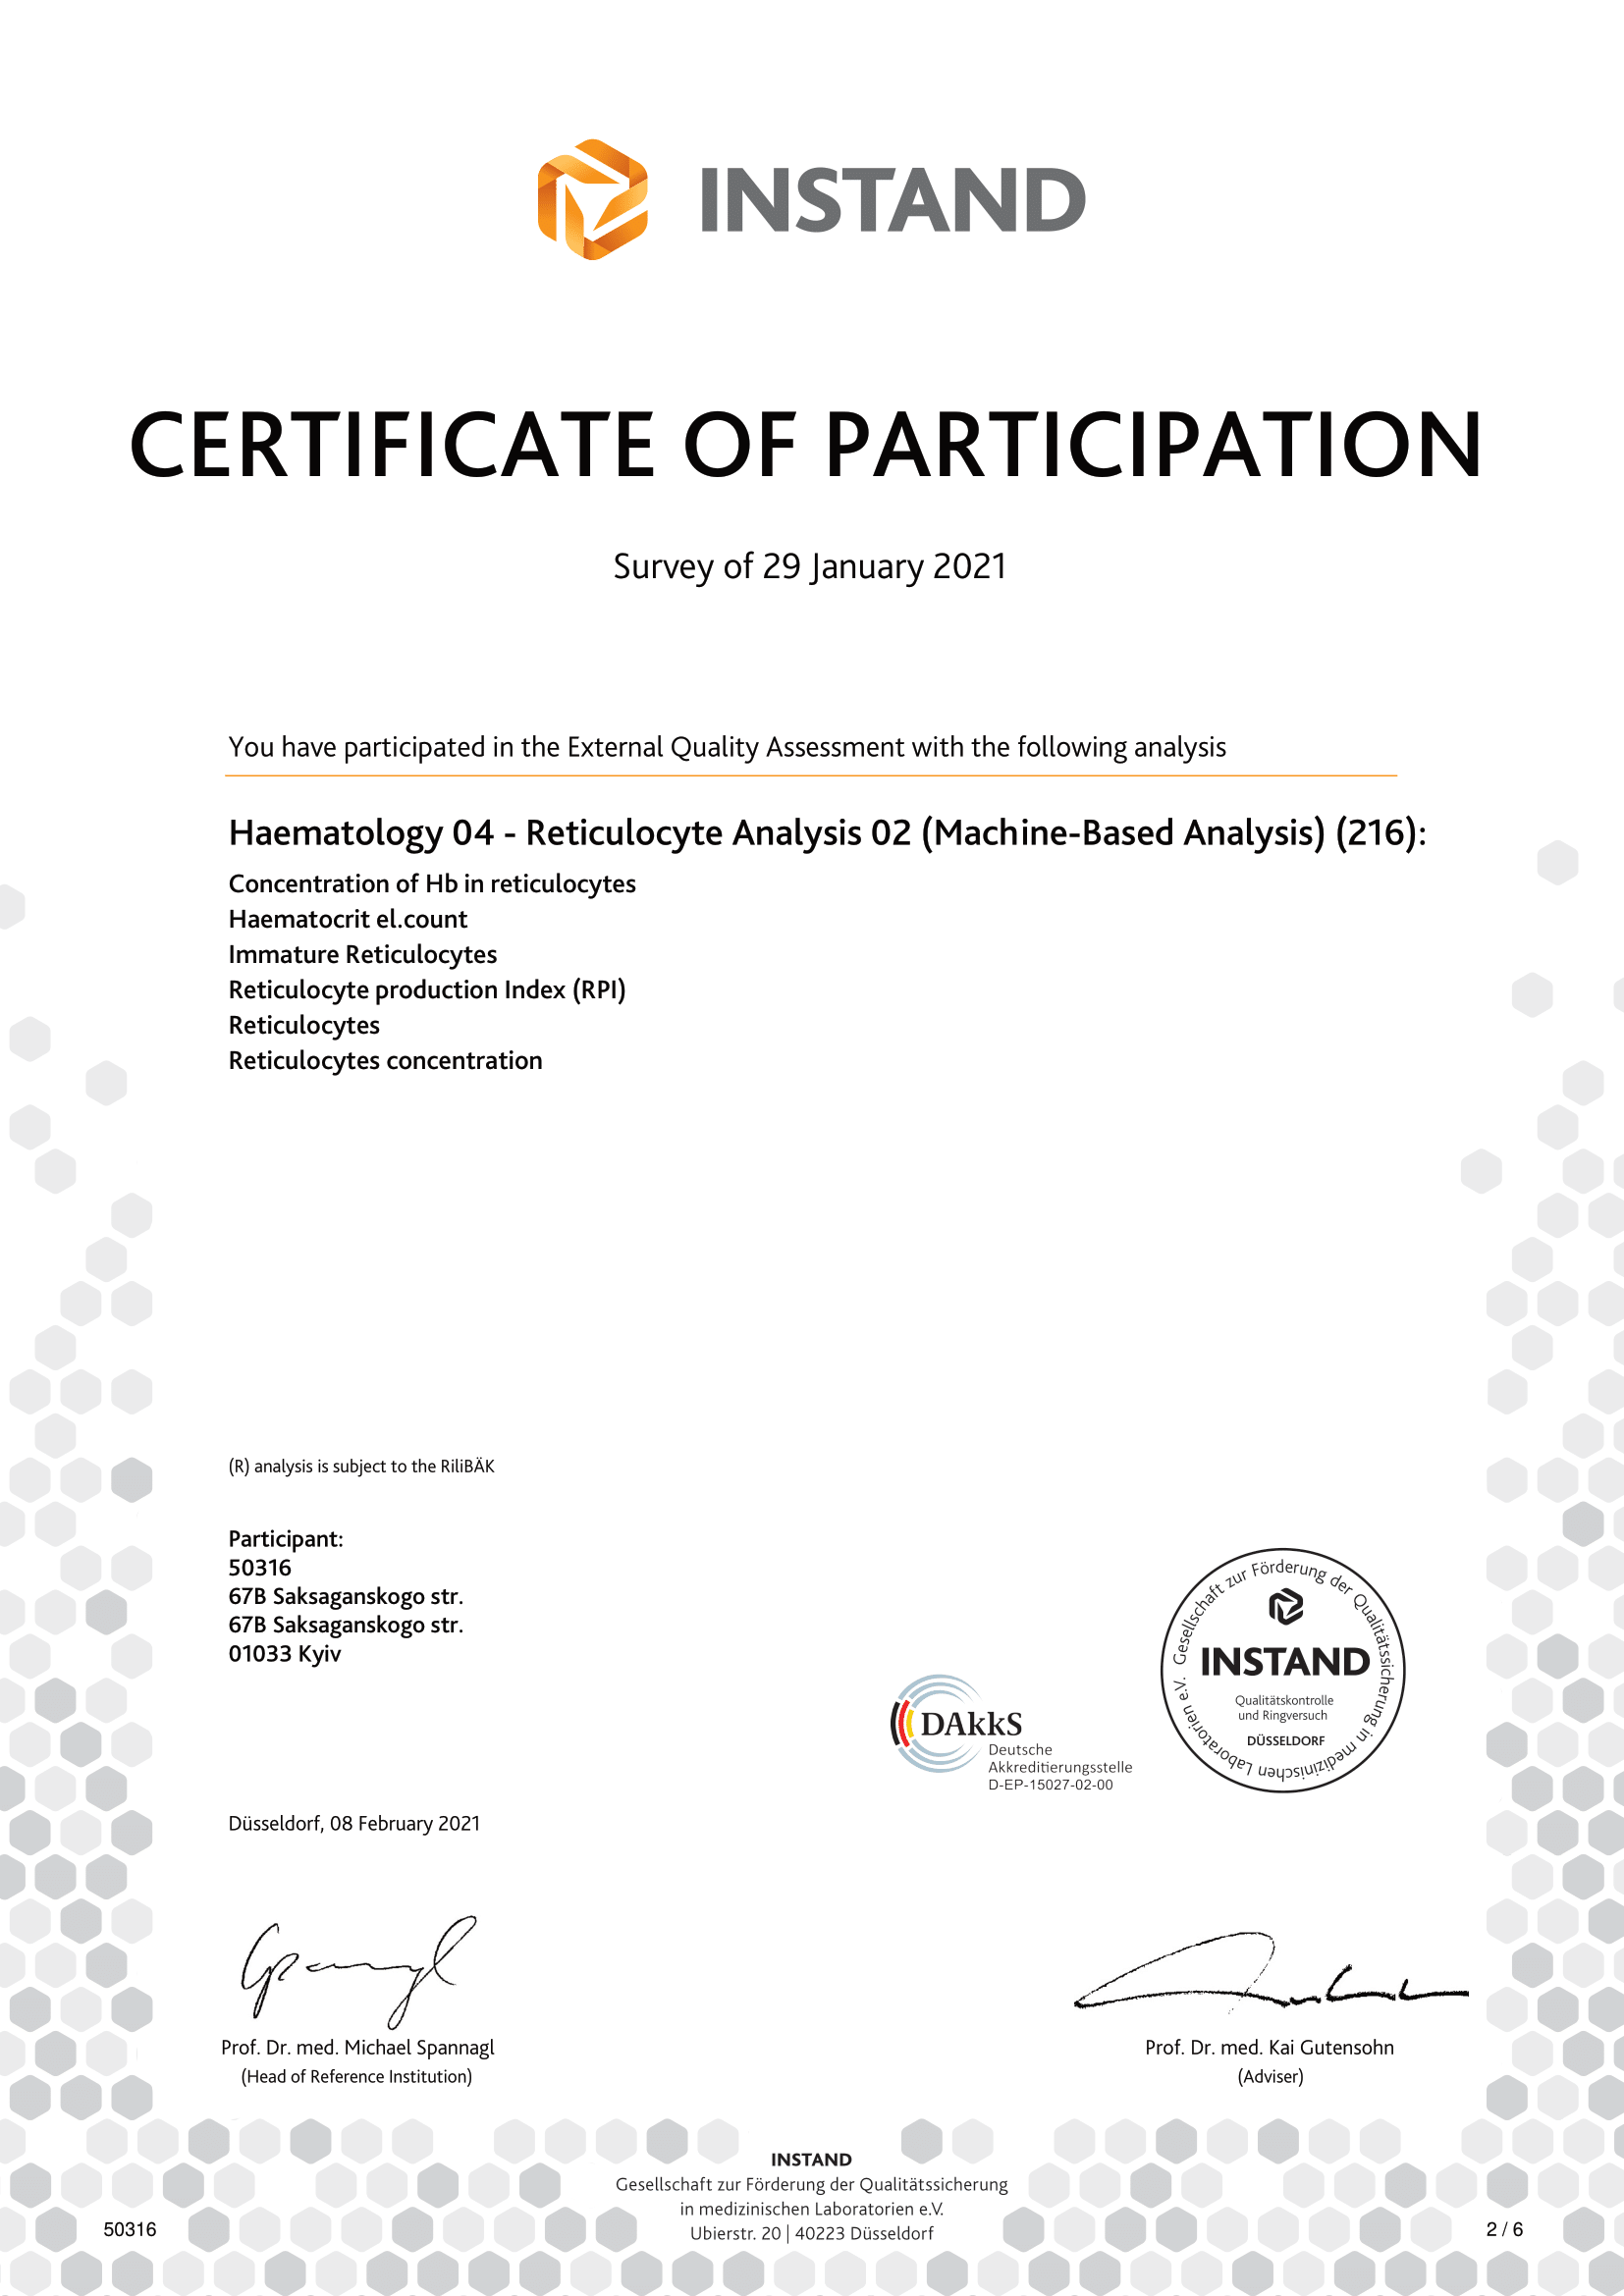 Фото - Сертификат об успешном прохождении внешней оценки качества по системe INSTAND ( Германия). Haematology - Reticulocyte Analysis